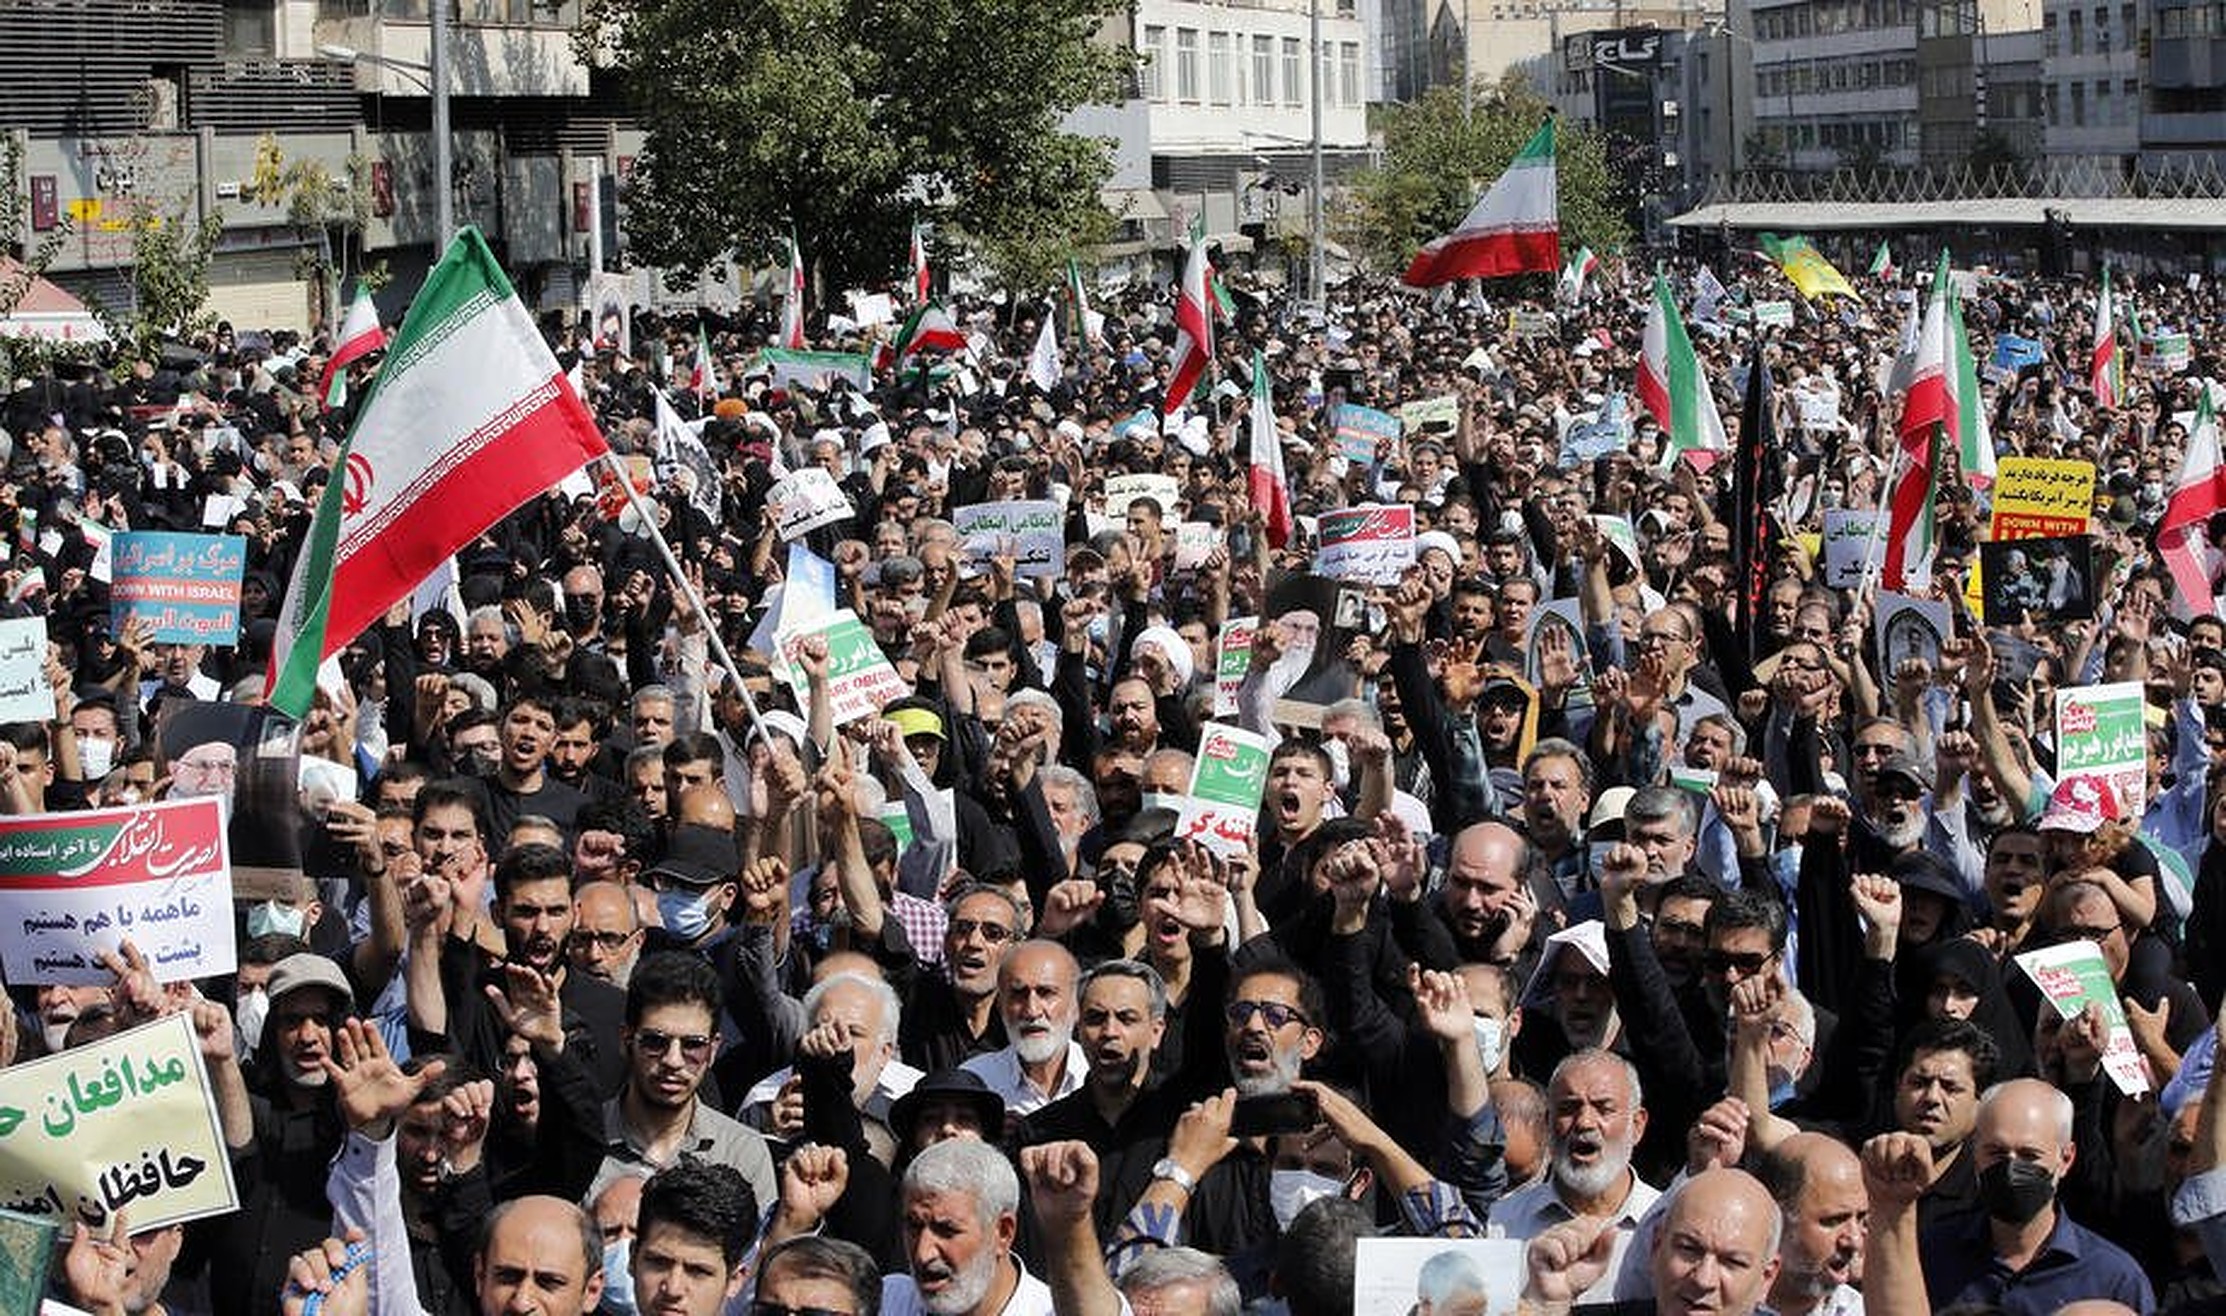 proteste iran sursa foto libertatea.v1